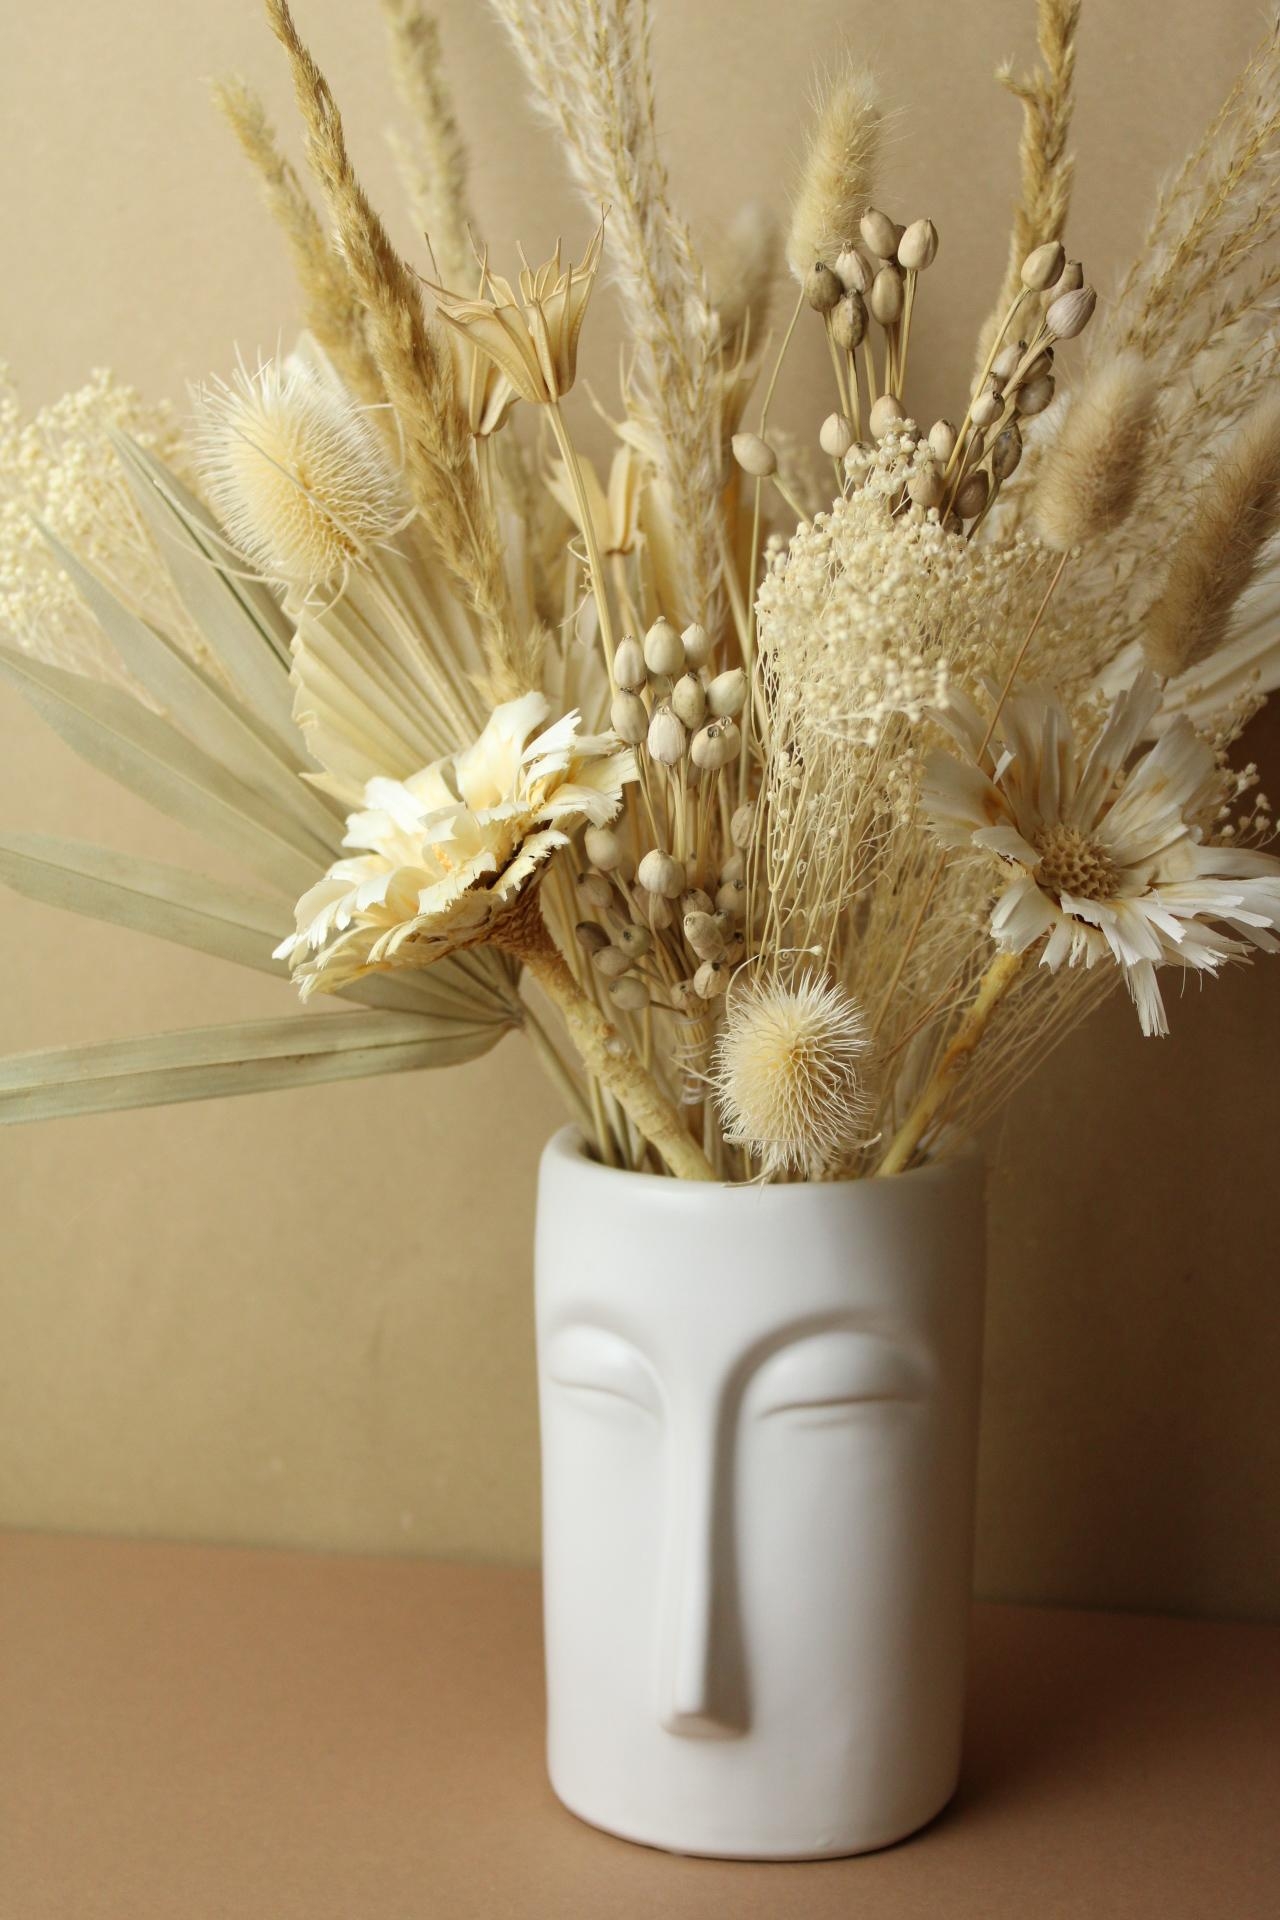 Verträumt durch den Herbst mit den Face-Vasen und wunderschönen Trockenblumen.

#trockenblumenliebe #vasenglueck